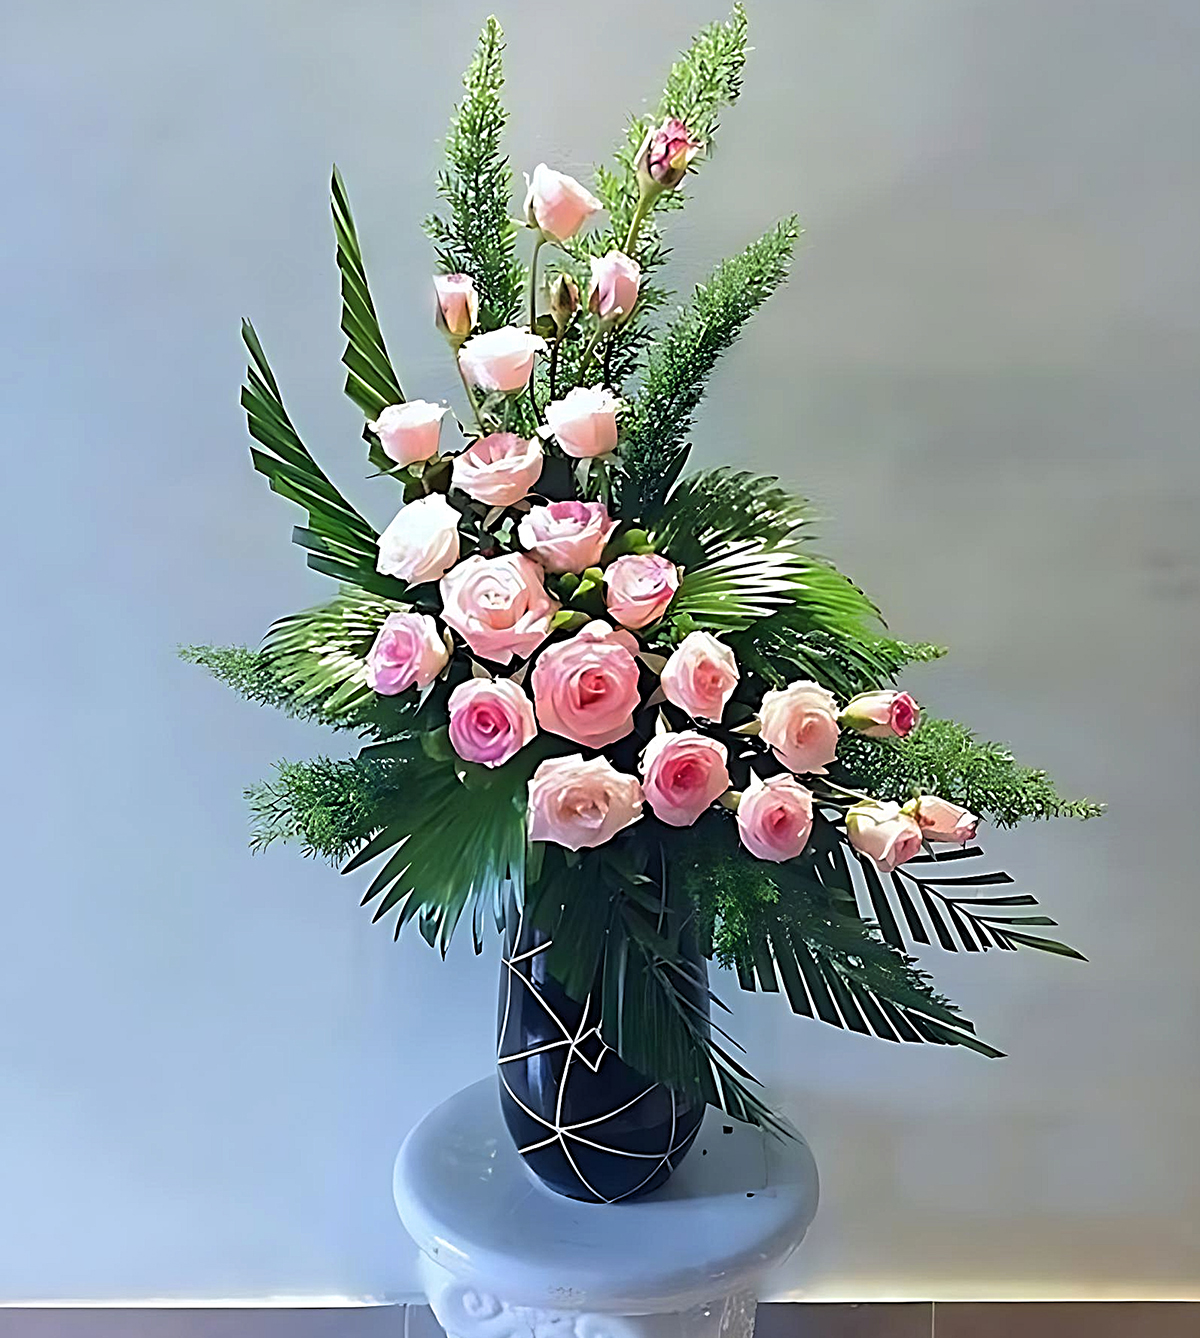 cách cam bat hoa trang trí bàn đám cưới| hoa đẹp| Ngọc Khuyên flower -  YouTube